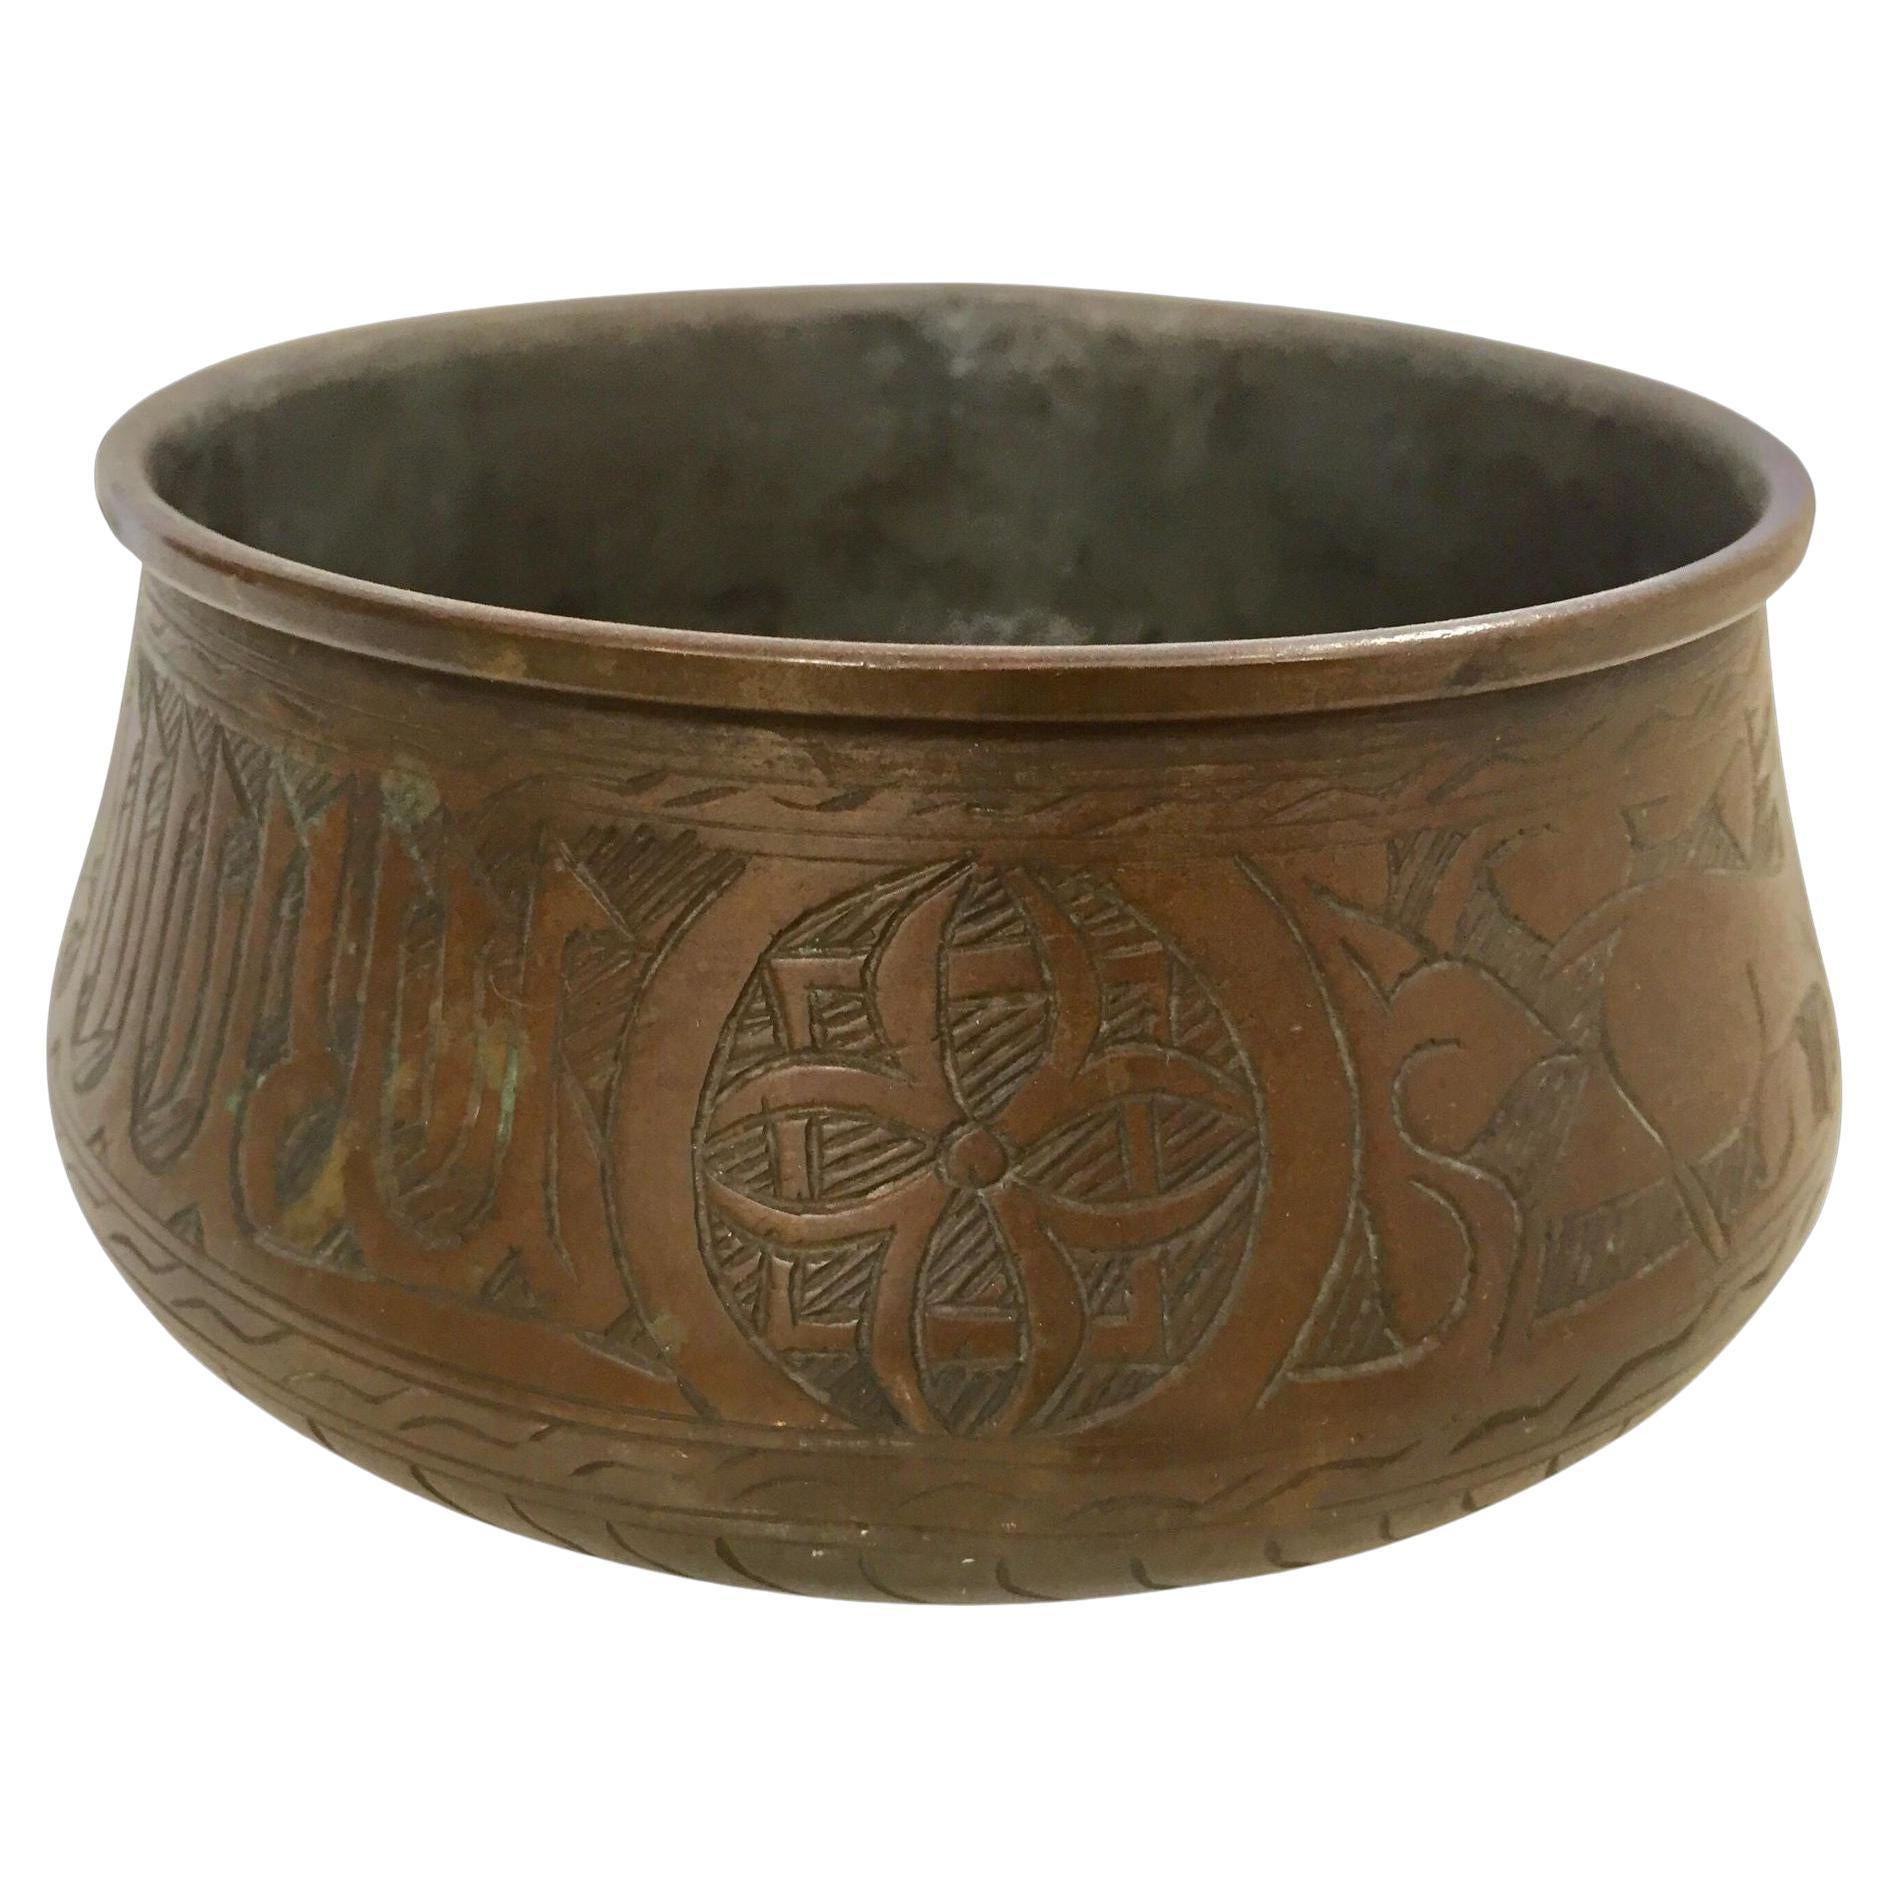 Bol mauresque du Moyen-Orient en cuivre gravé à la main avec écriture islamique